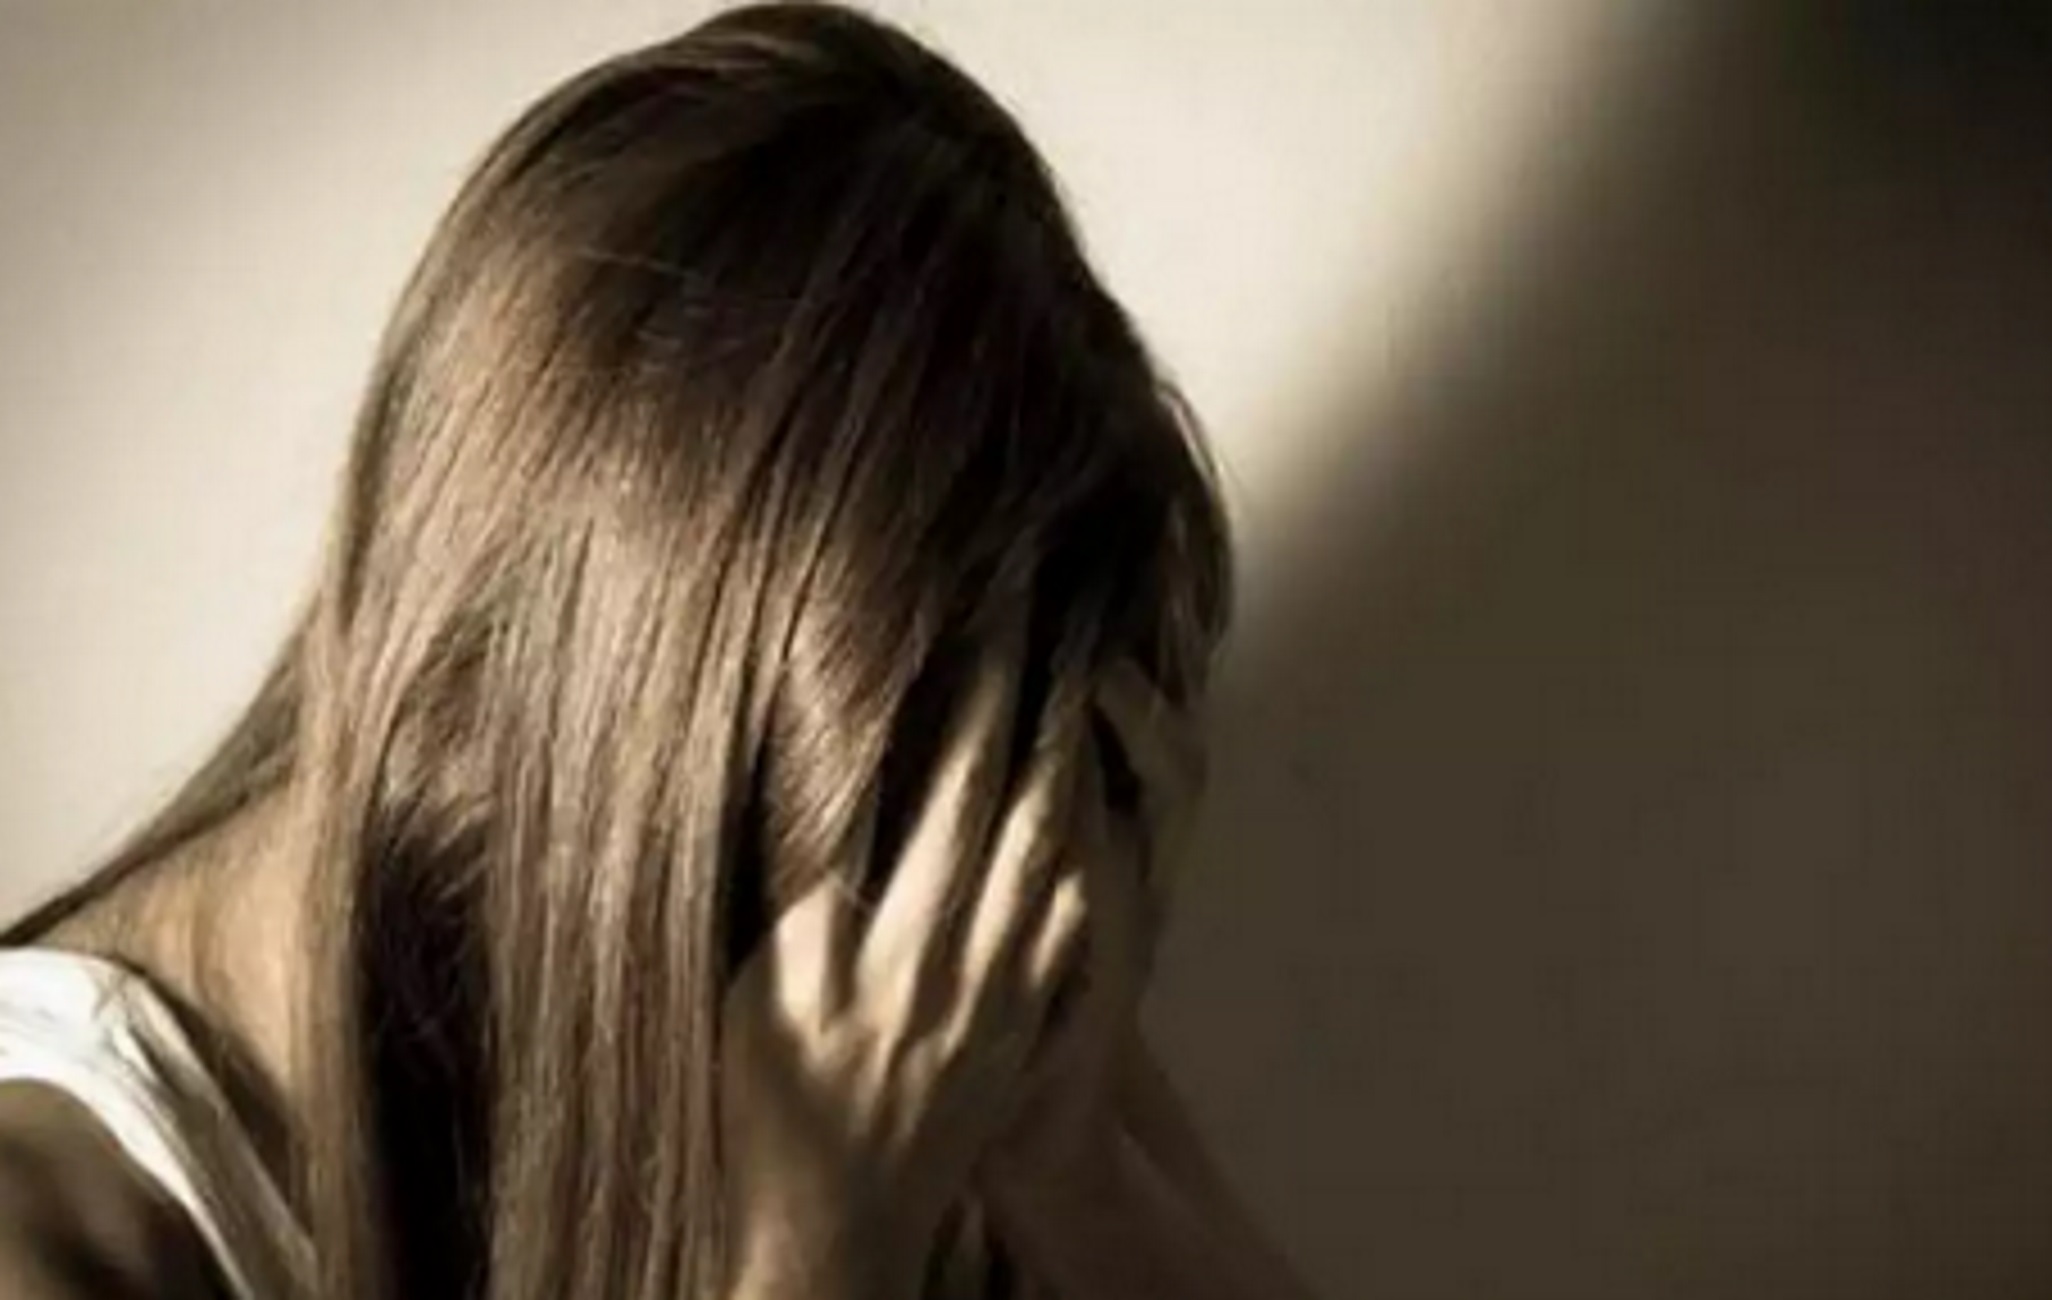 Νίκαια: «Κακοποιήθηκε σεξουαλικά» η 14χρονη – Βρέθηκε σε «φρικτή κατάσταση» λέει ο Κώστας Γιαννόπουλος